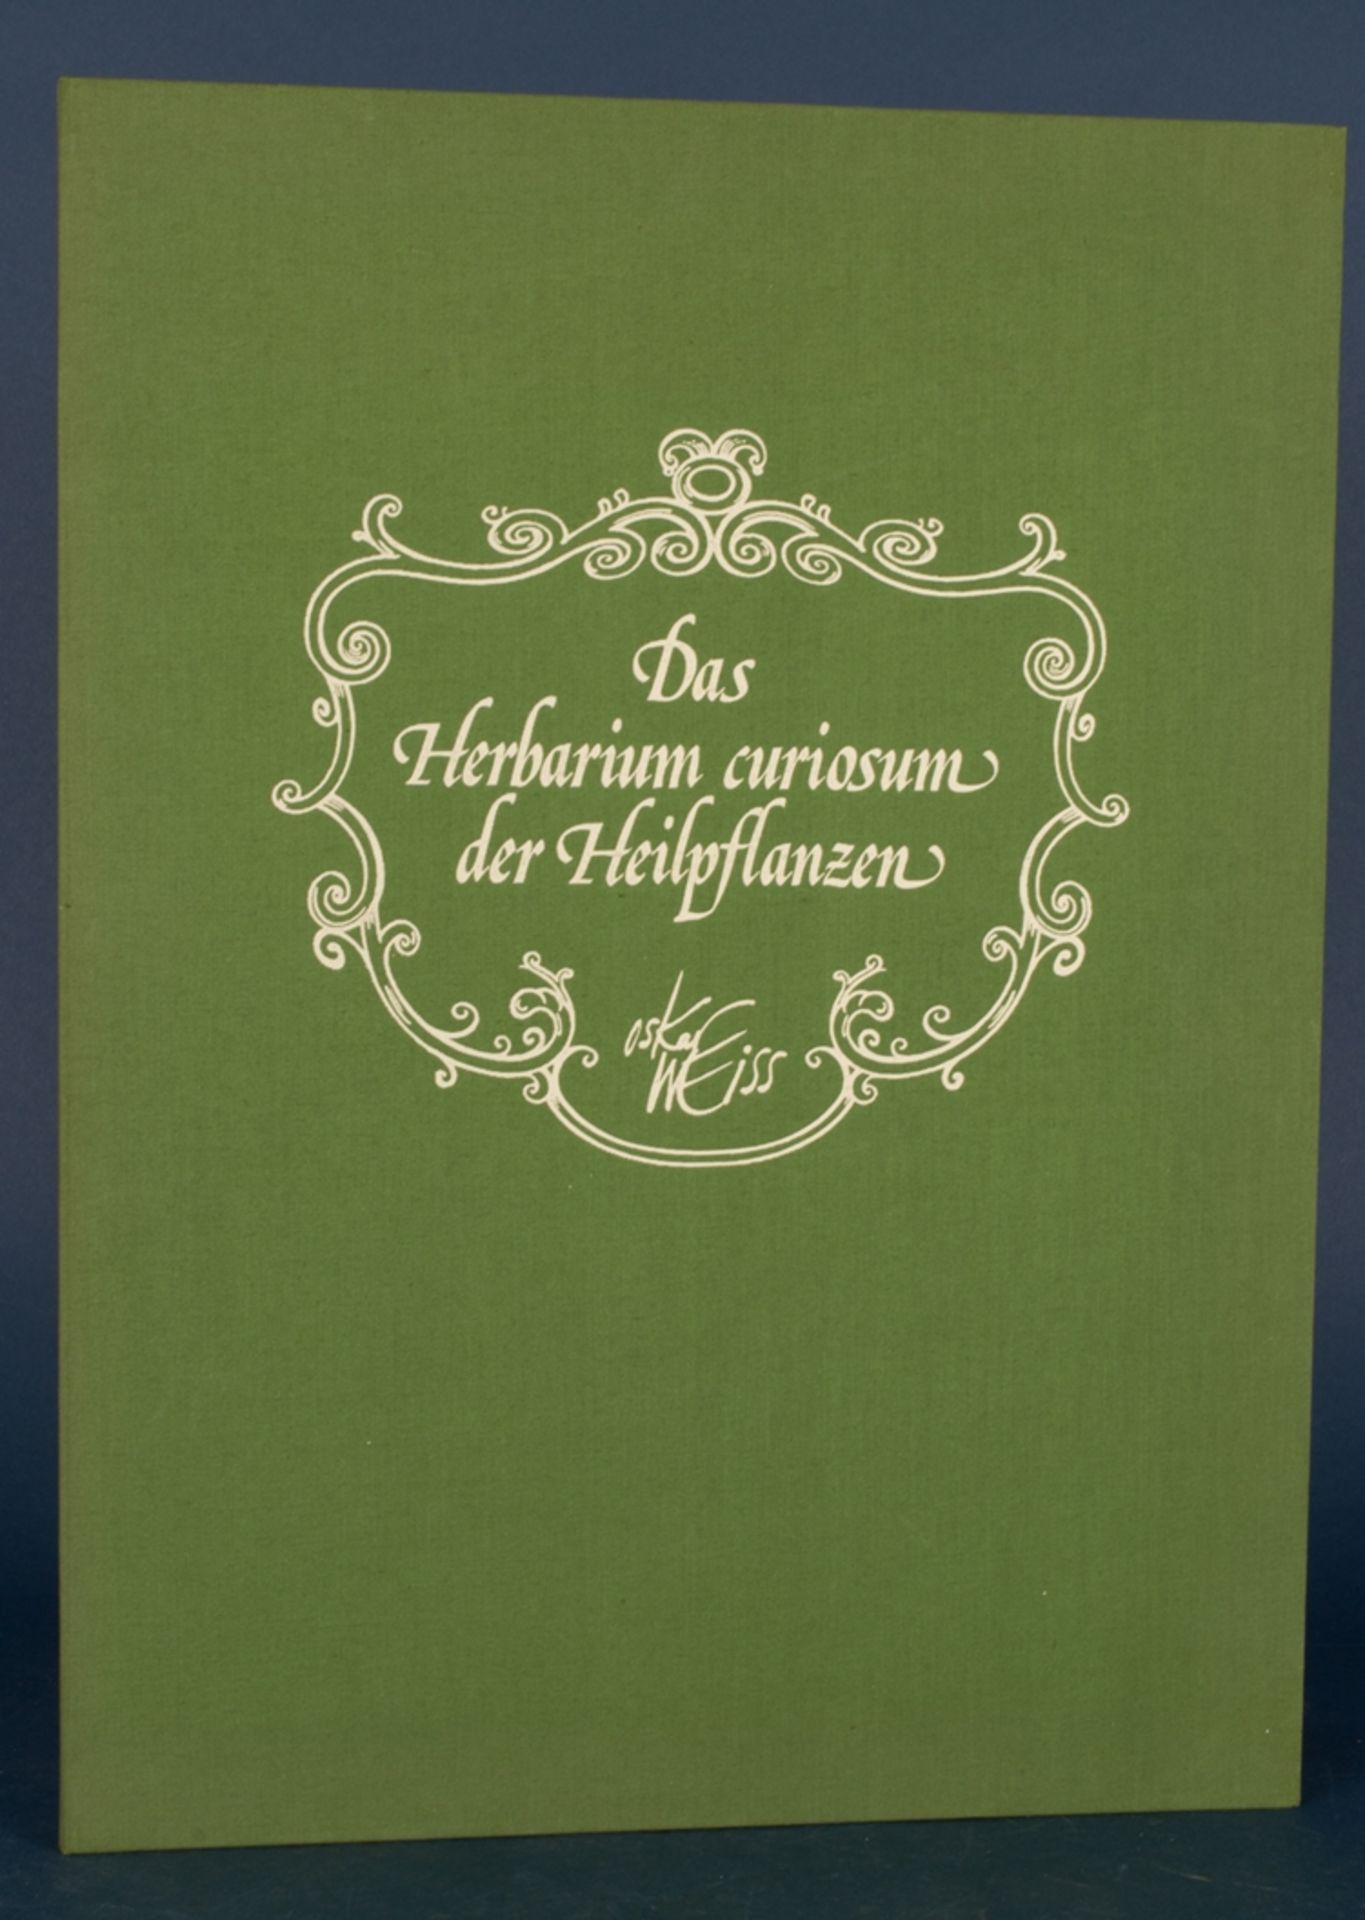 Das Herbarium Curiosum der "Heilpflanzen" des Schweizer "Bildererfinder's" Oskar Weiss (geb.